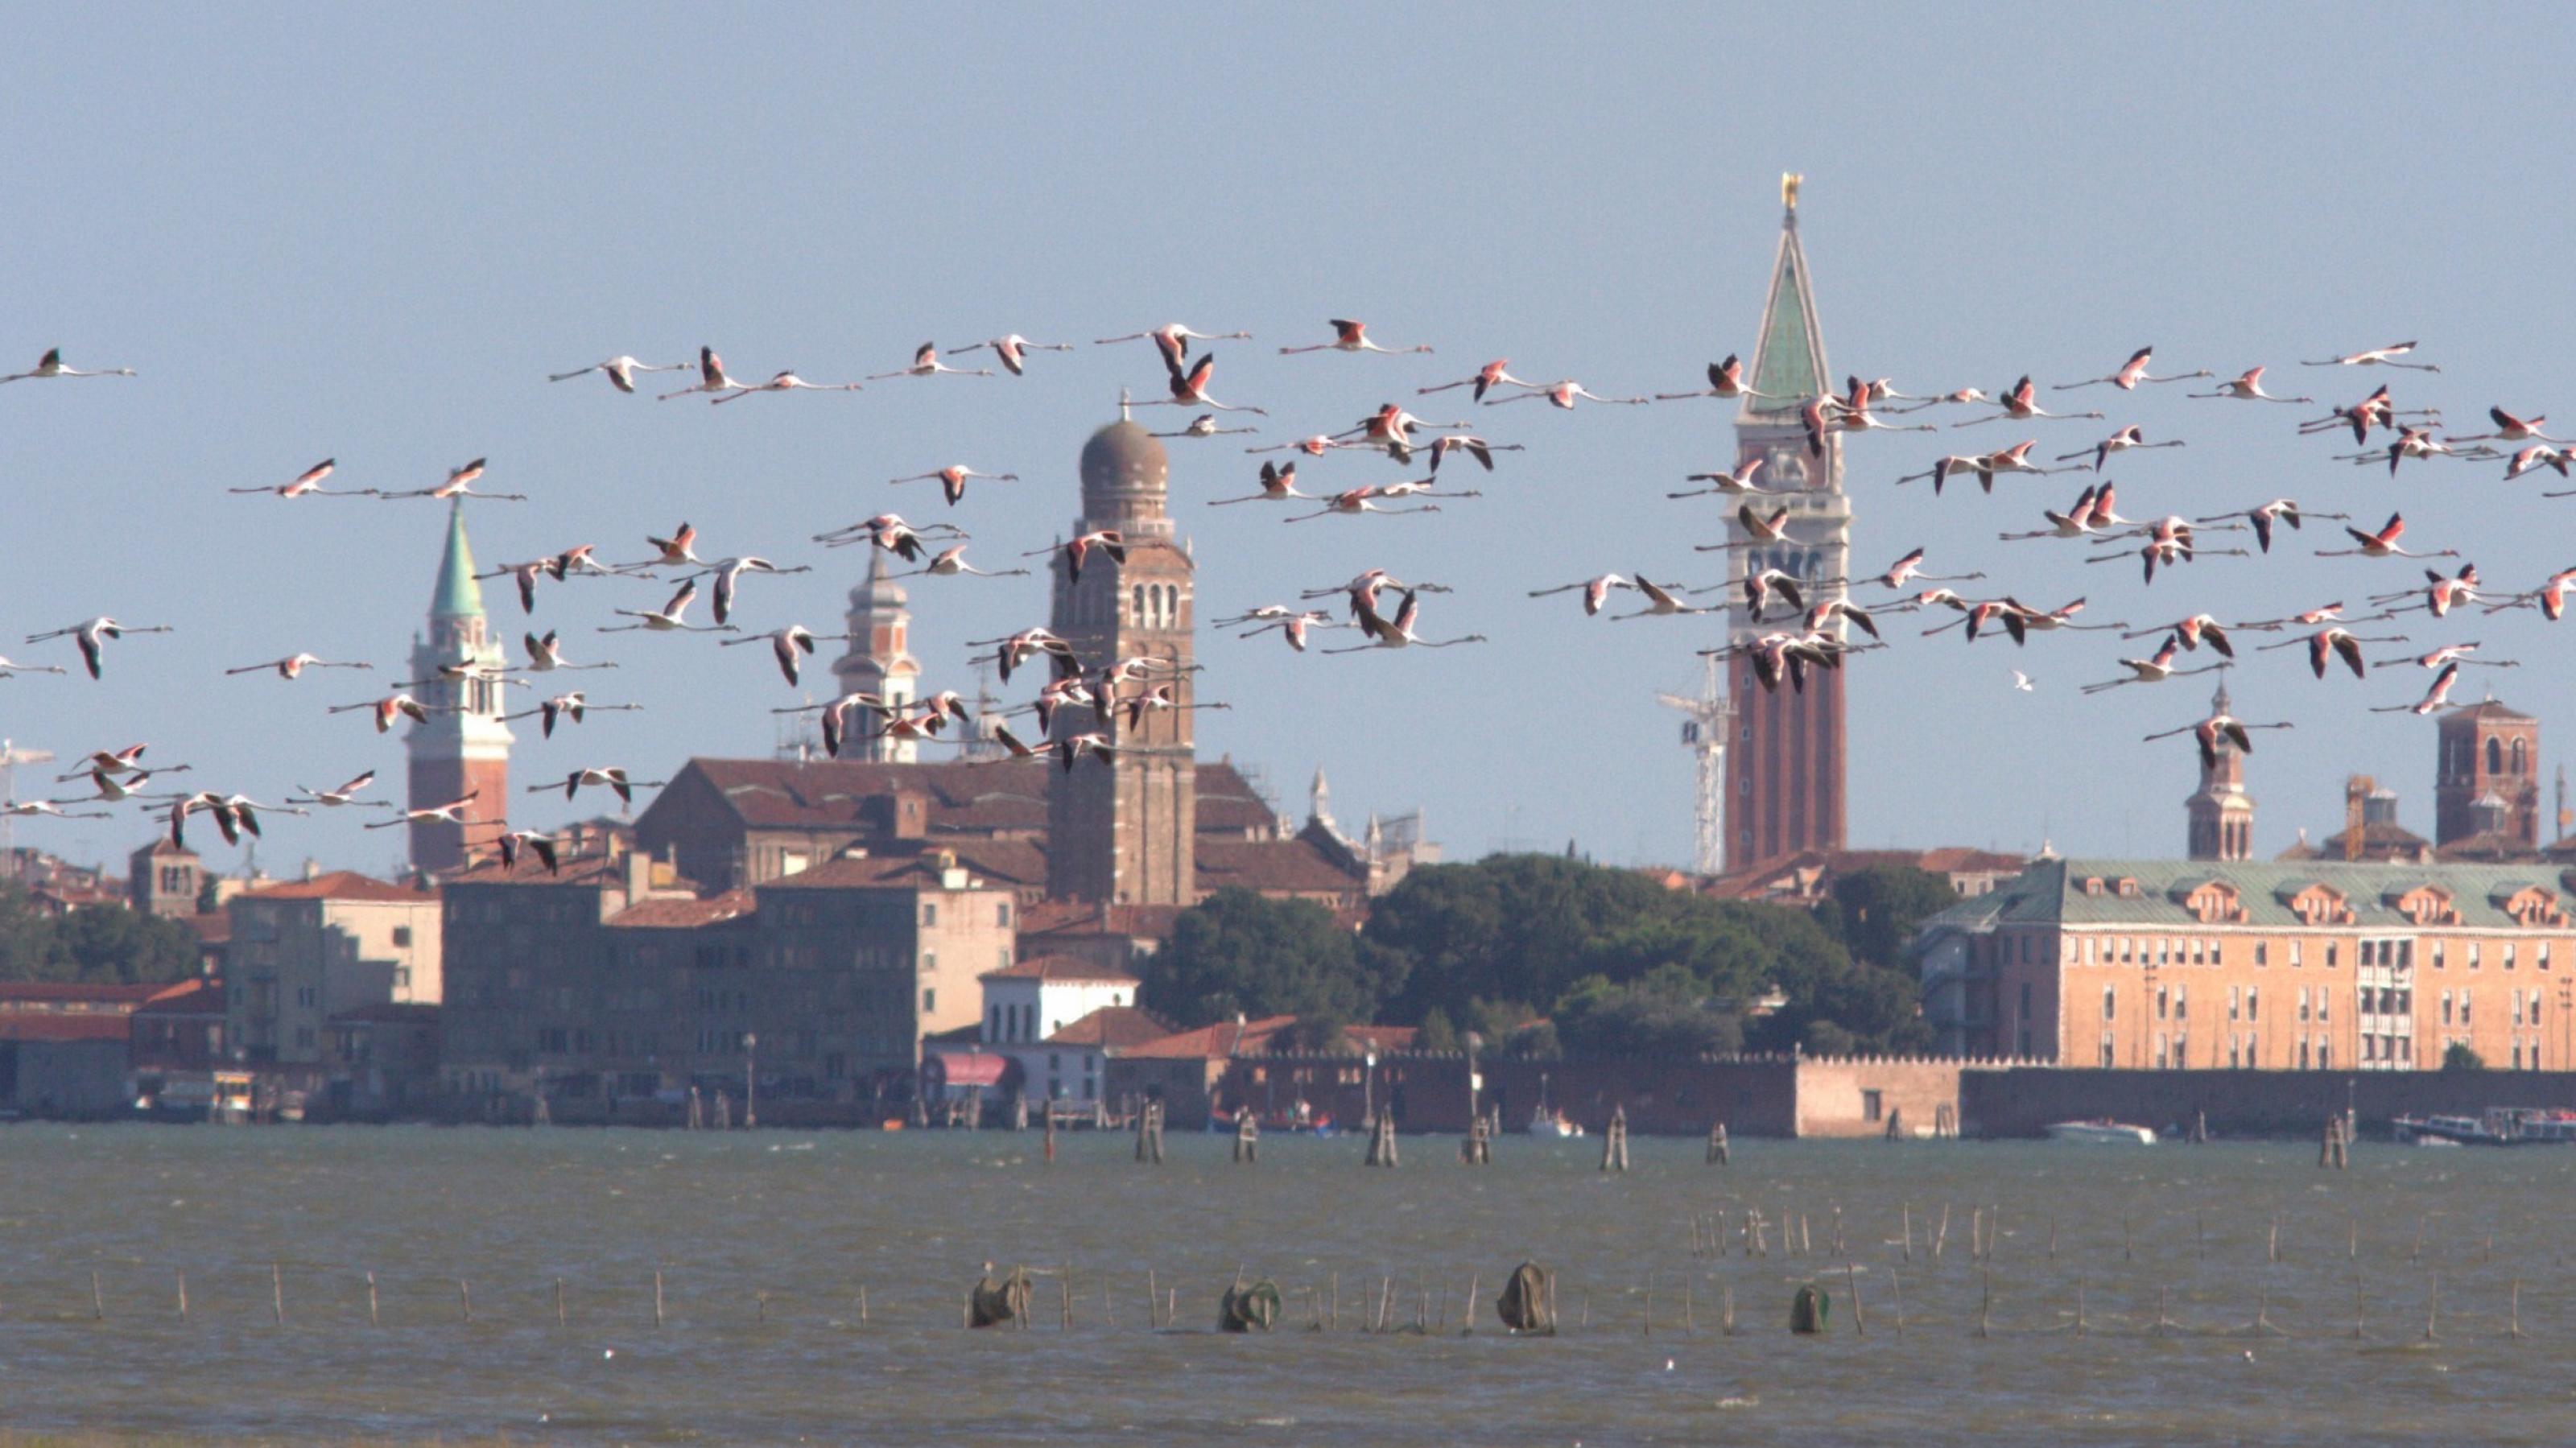 Eine Gruppe Flamingos im Flug vor der Silhouette von Venedig.